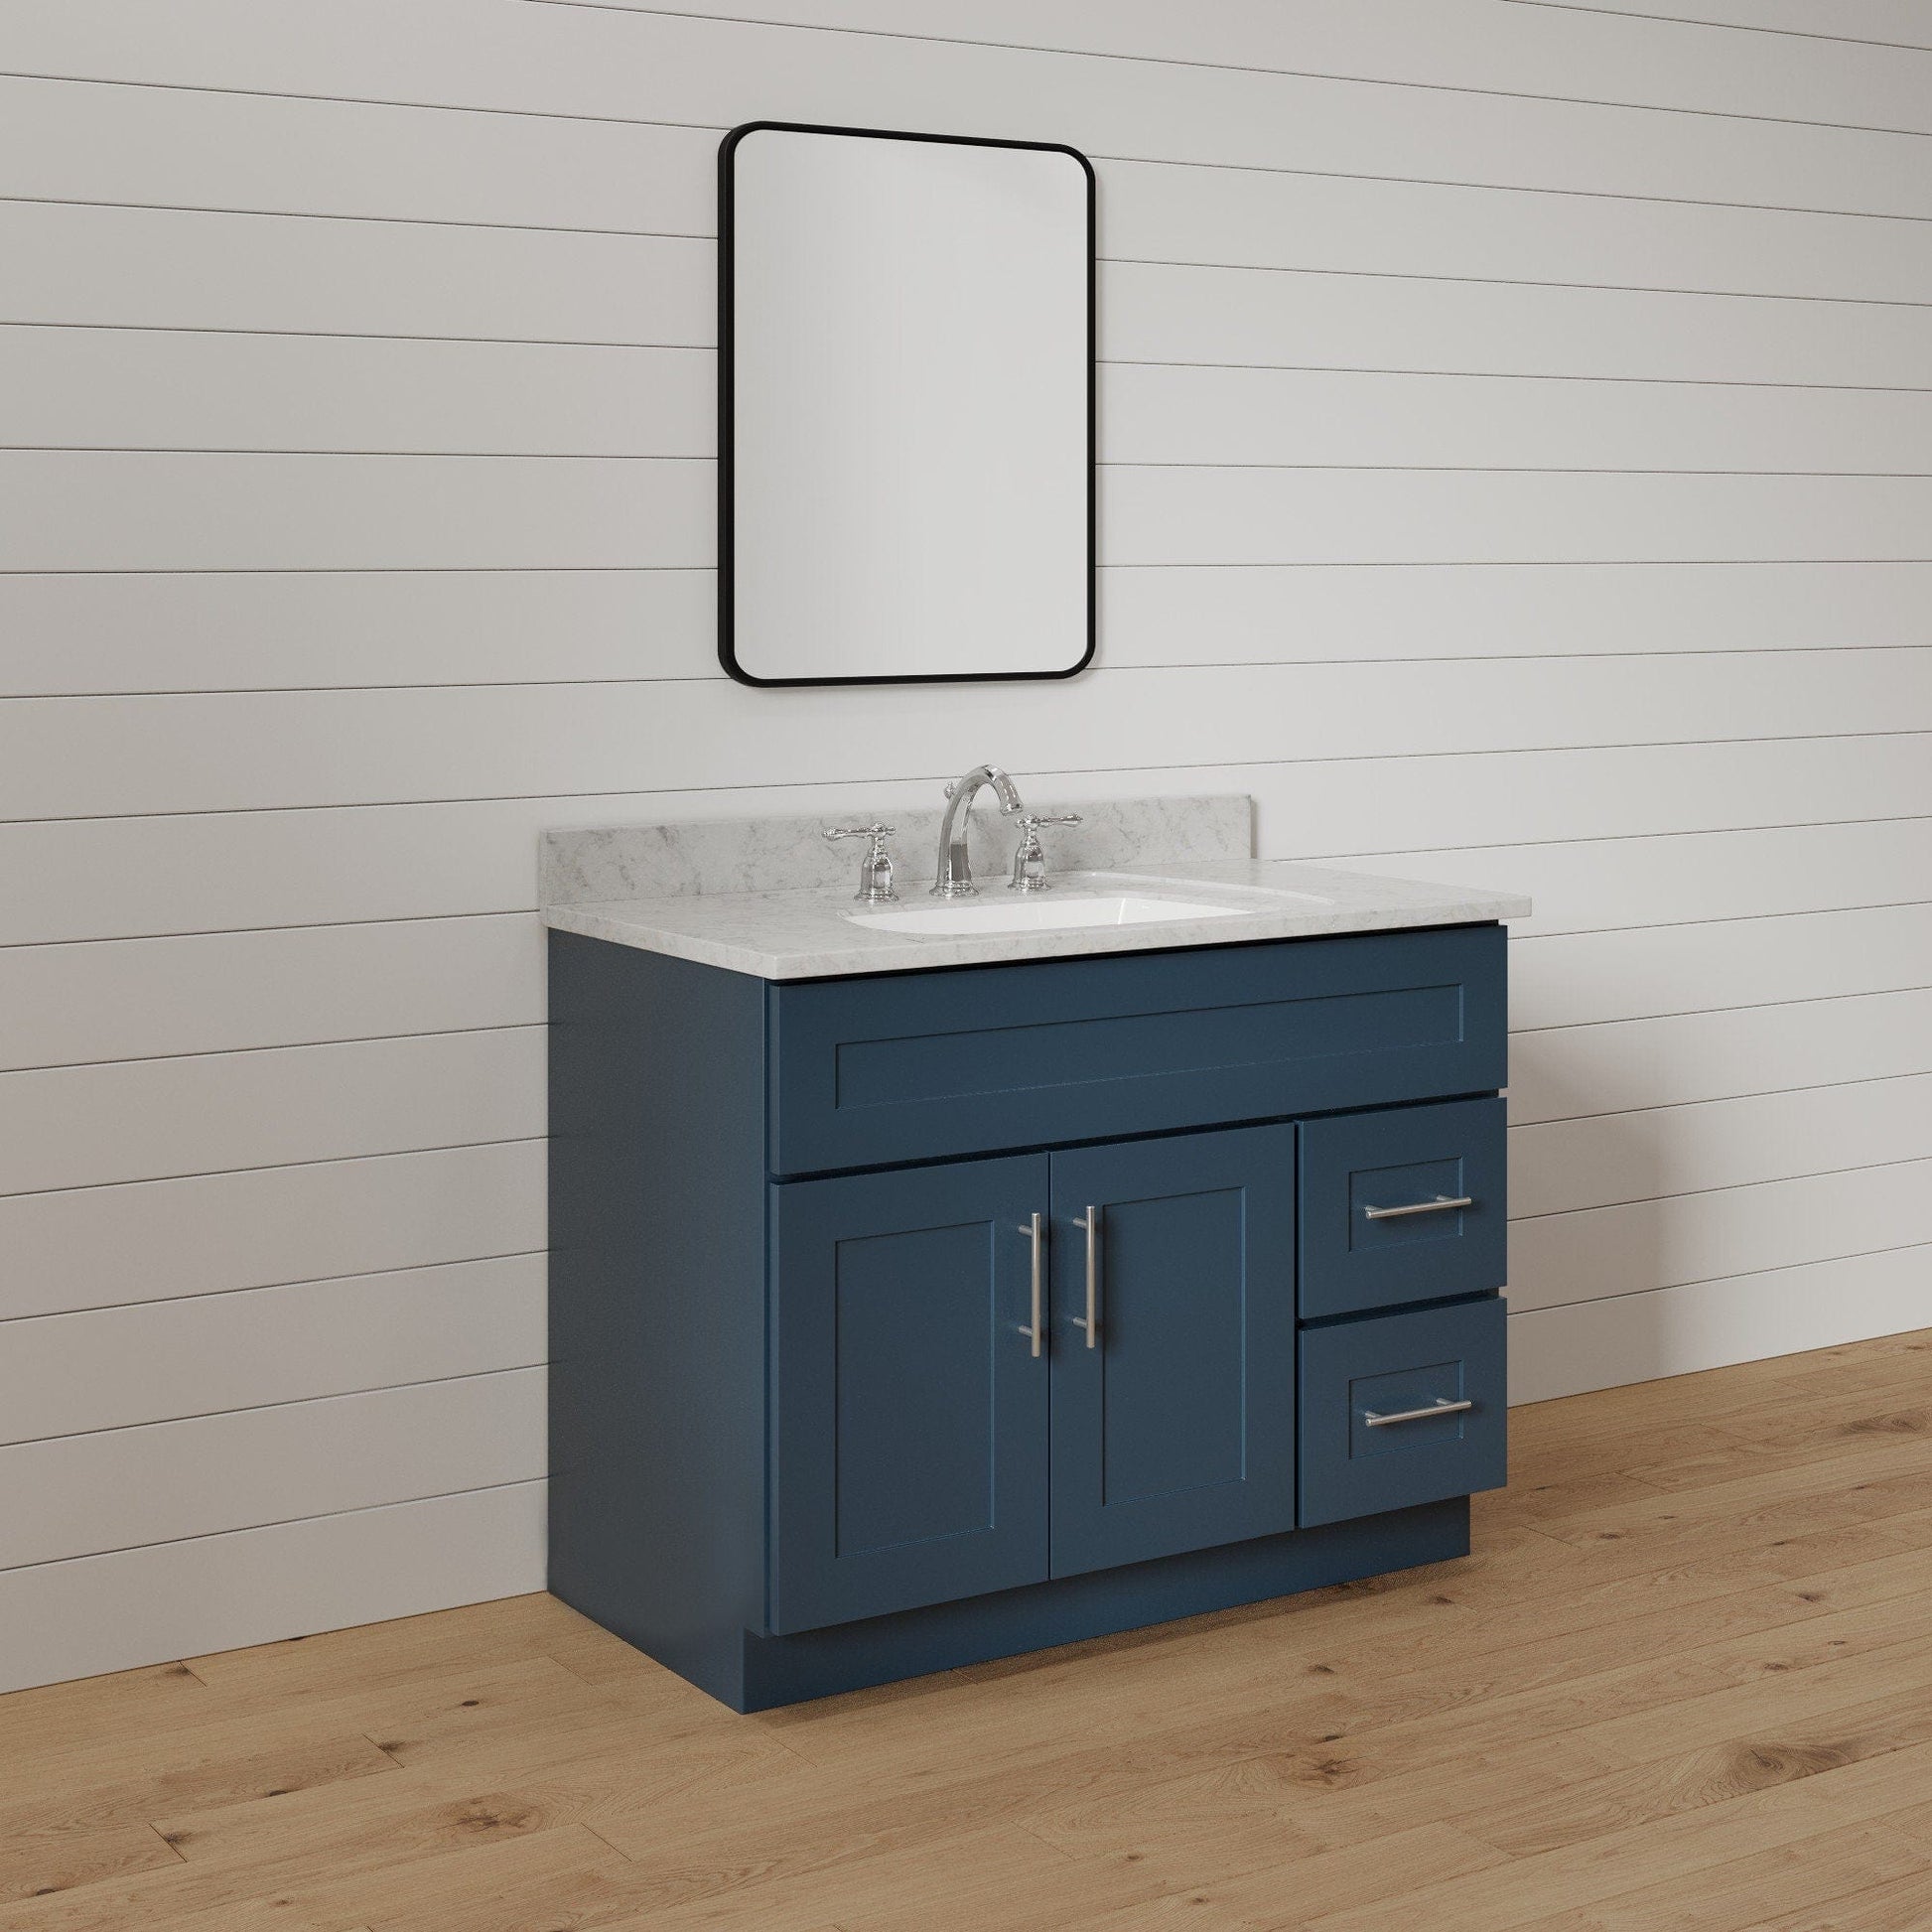 Riley & Higgs Bathroom Vanity 36 Inch Navy Blue Shaker Single Sink Bathroom Vanity